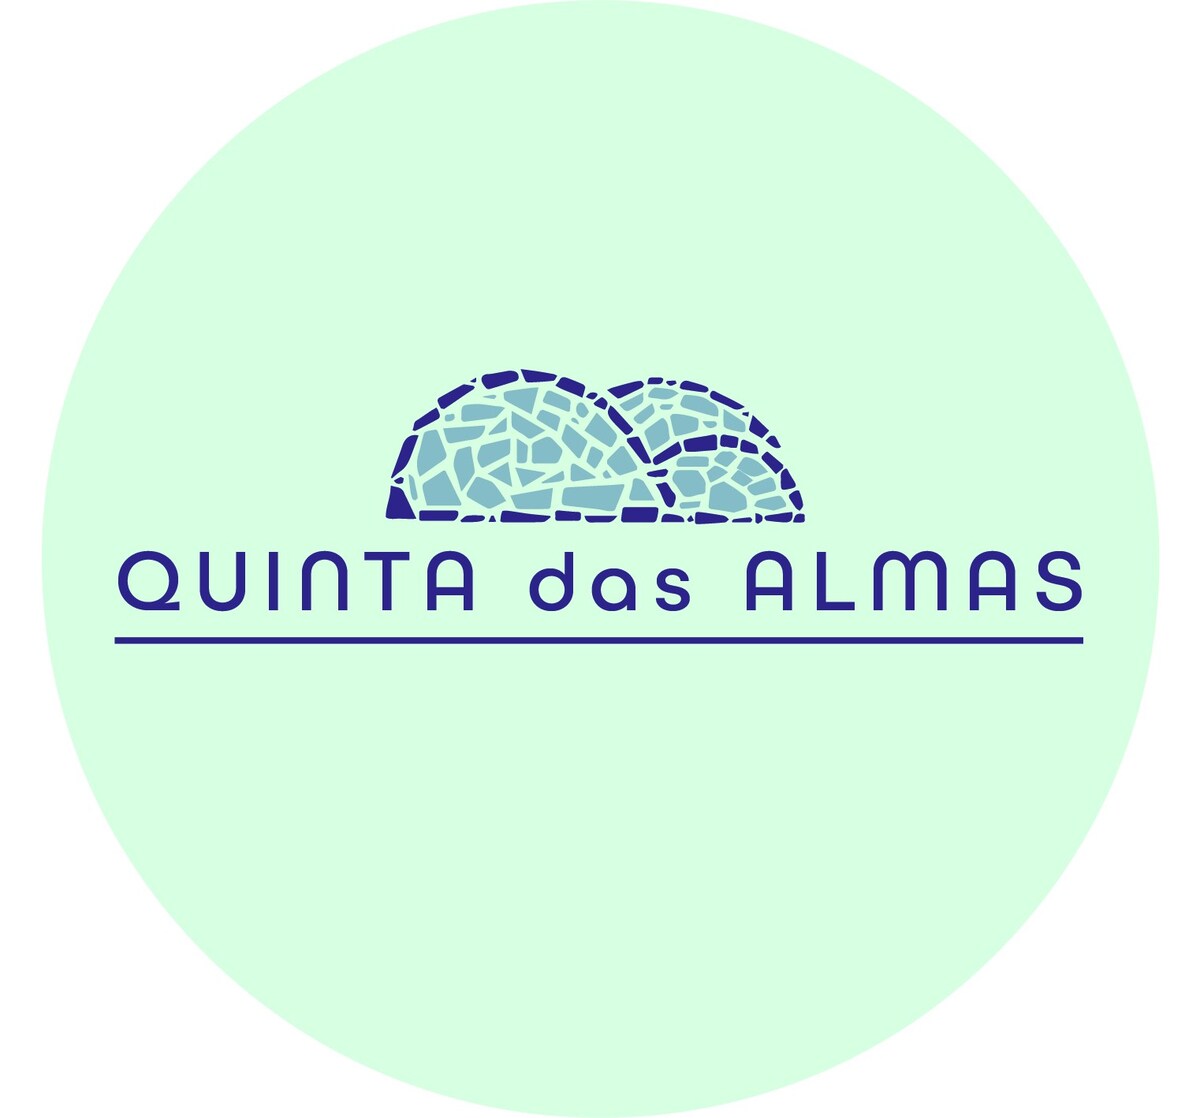 金塔达斯阿尔马斯(Quinta das Almas)